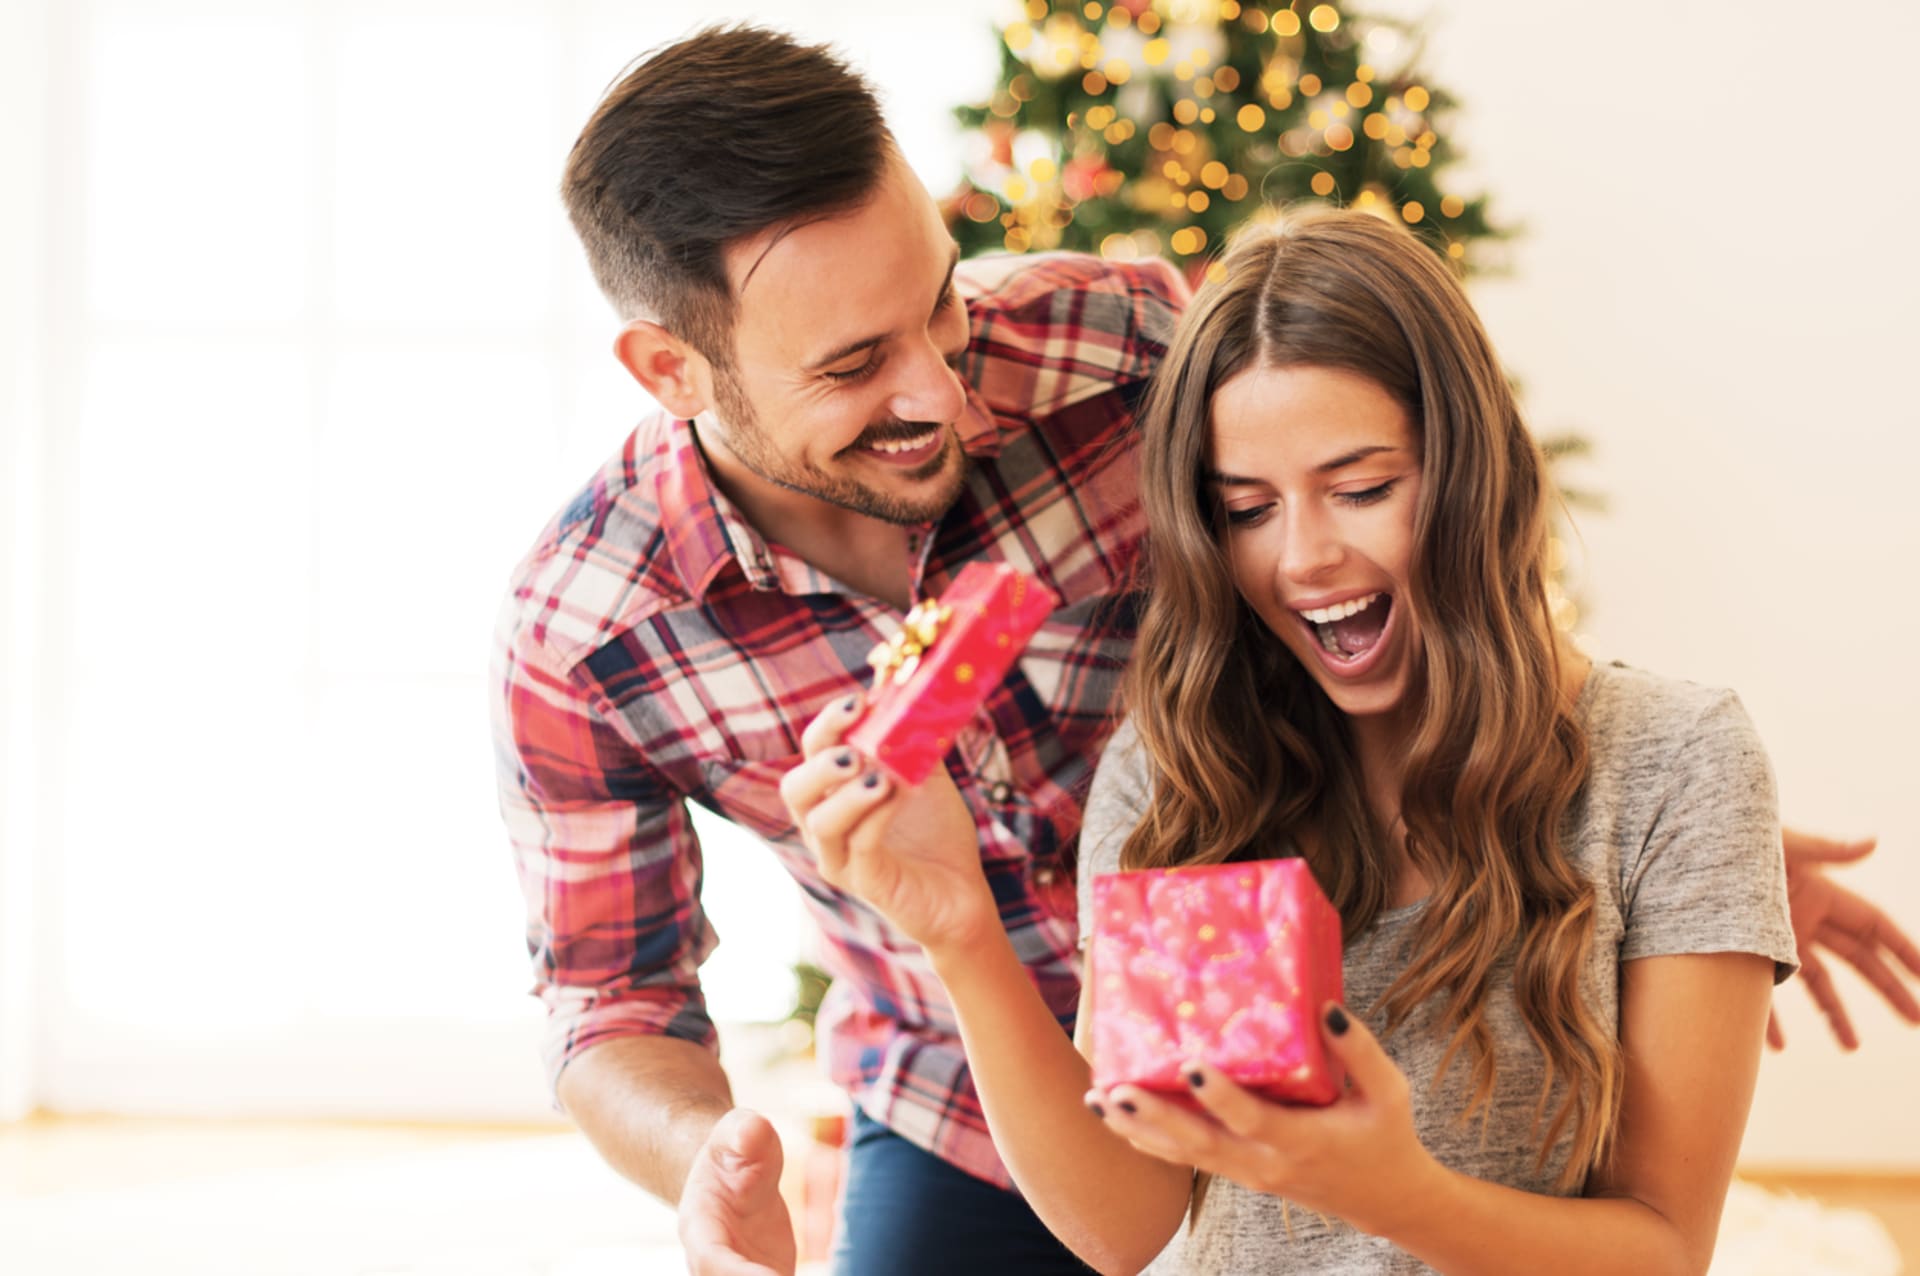 Co koupit partnerce k Vánocům?